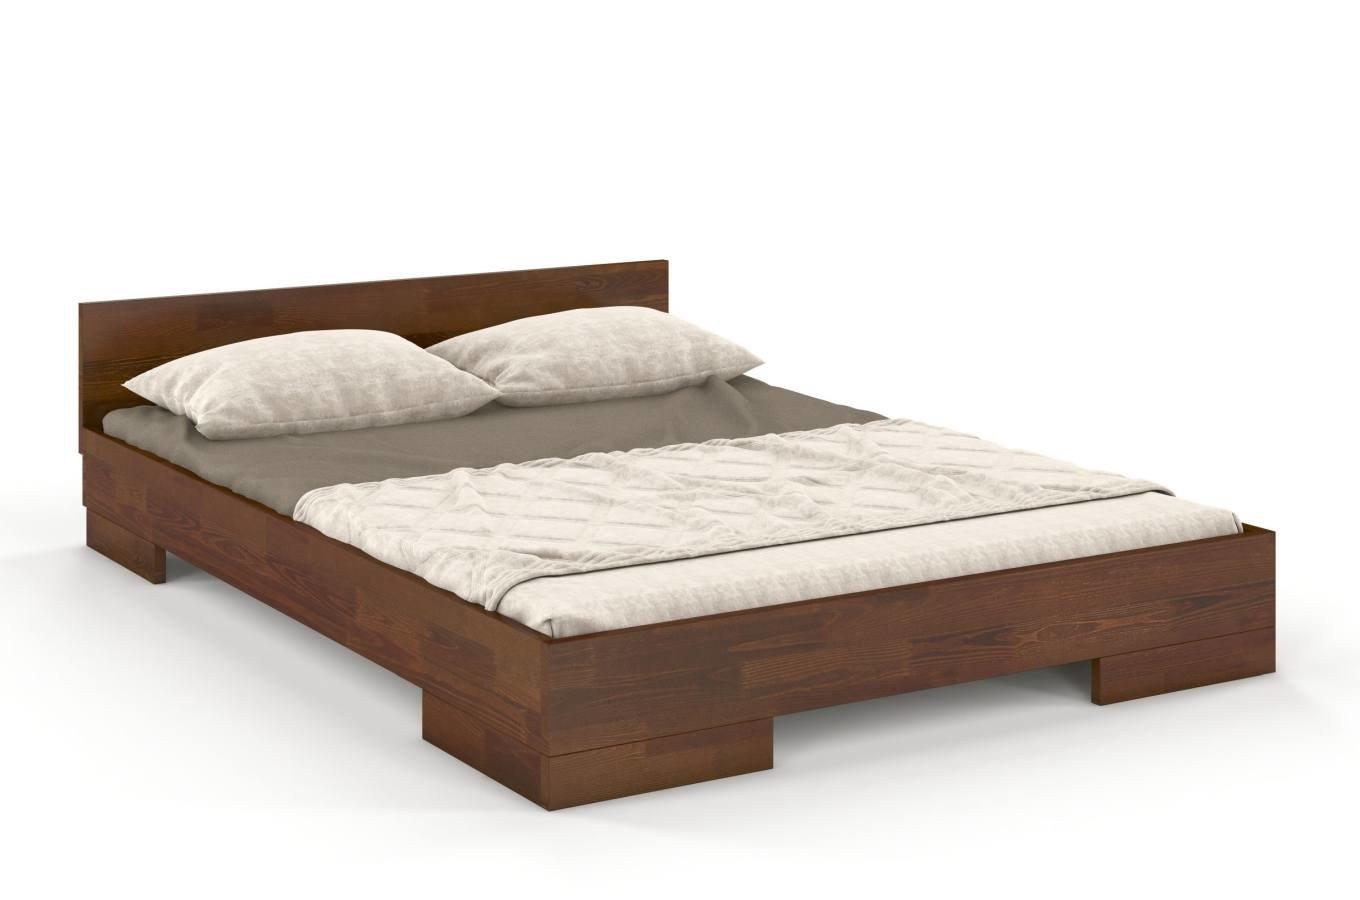 Łóżko drewniane bukowe Skandica SPECTRUM Niskie / 200x200 cm, kolor orzech